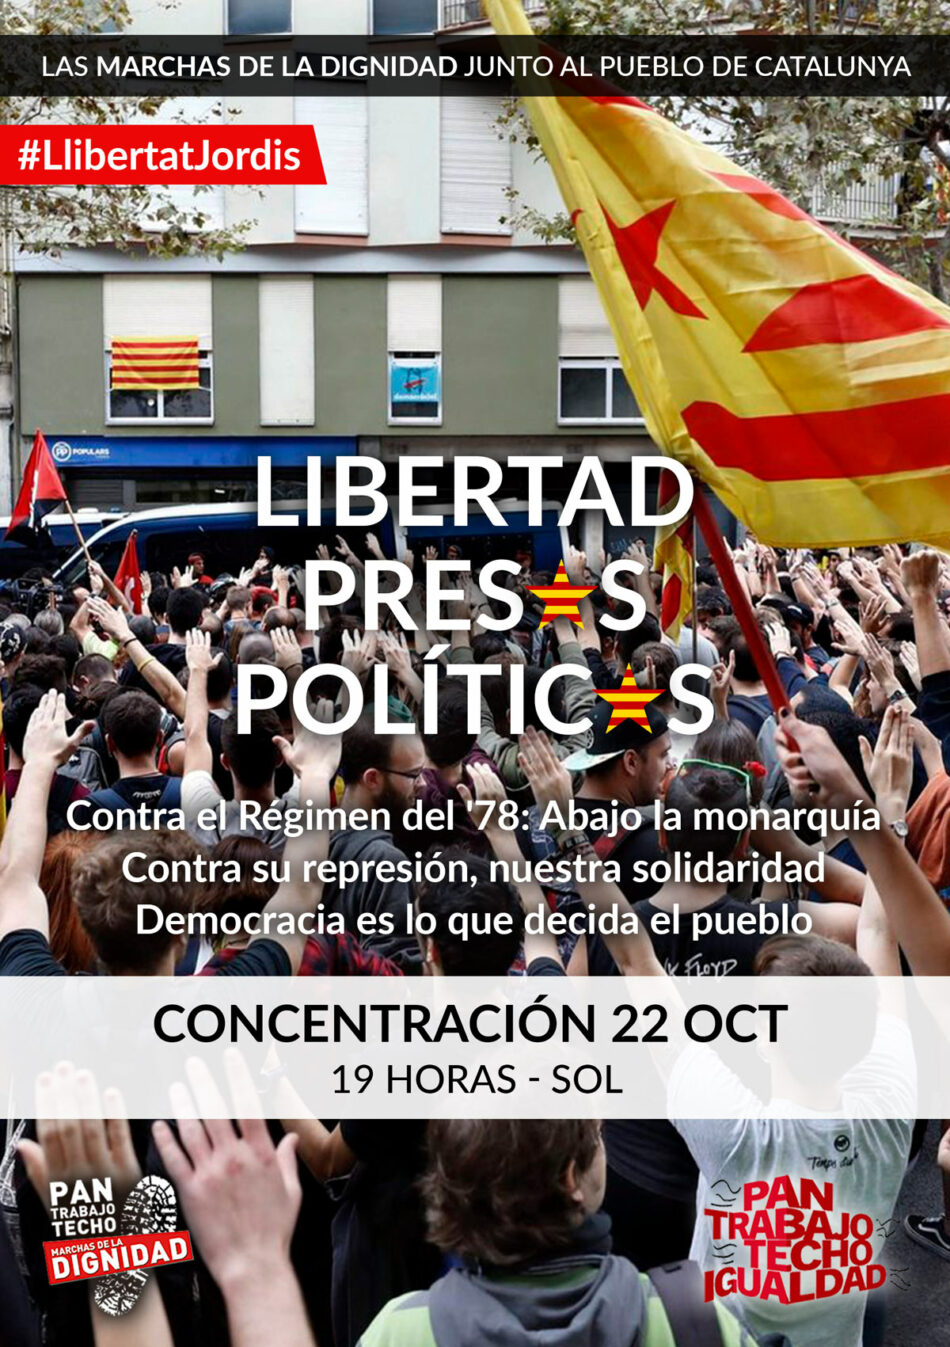 Las Marchas de la Dignidad convocan concentración en solidaridad con el pueblo de Cataluña y por la libertad de los presos políticos